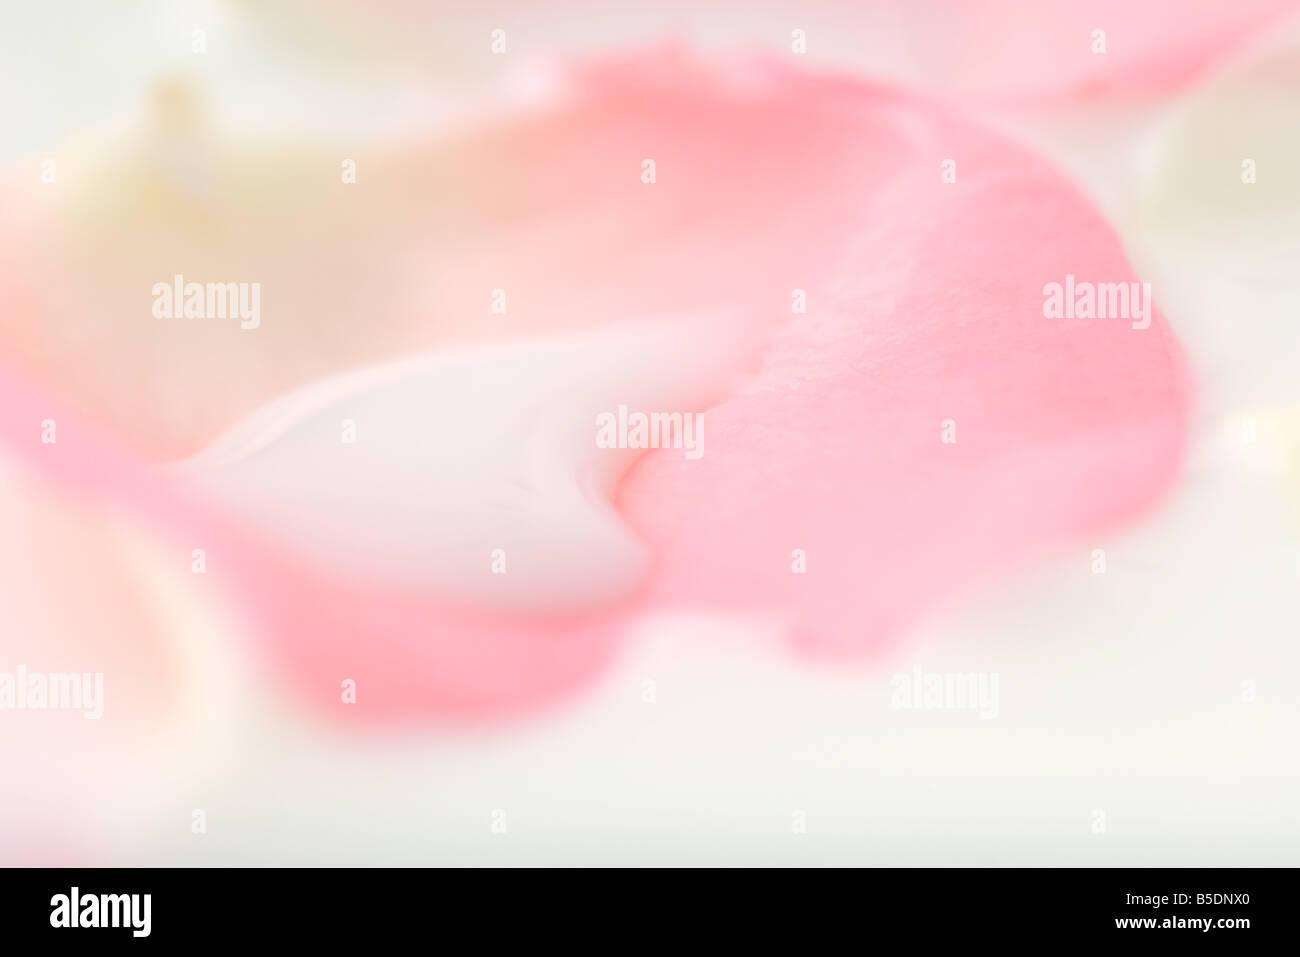 Weiße Flüssigkeit auf Blume Blütenblatt, extreme Nahaufnahme  Stockfotografie - Alamy